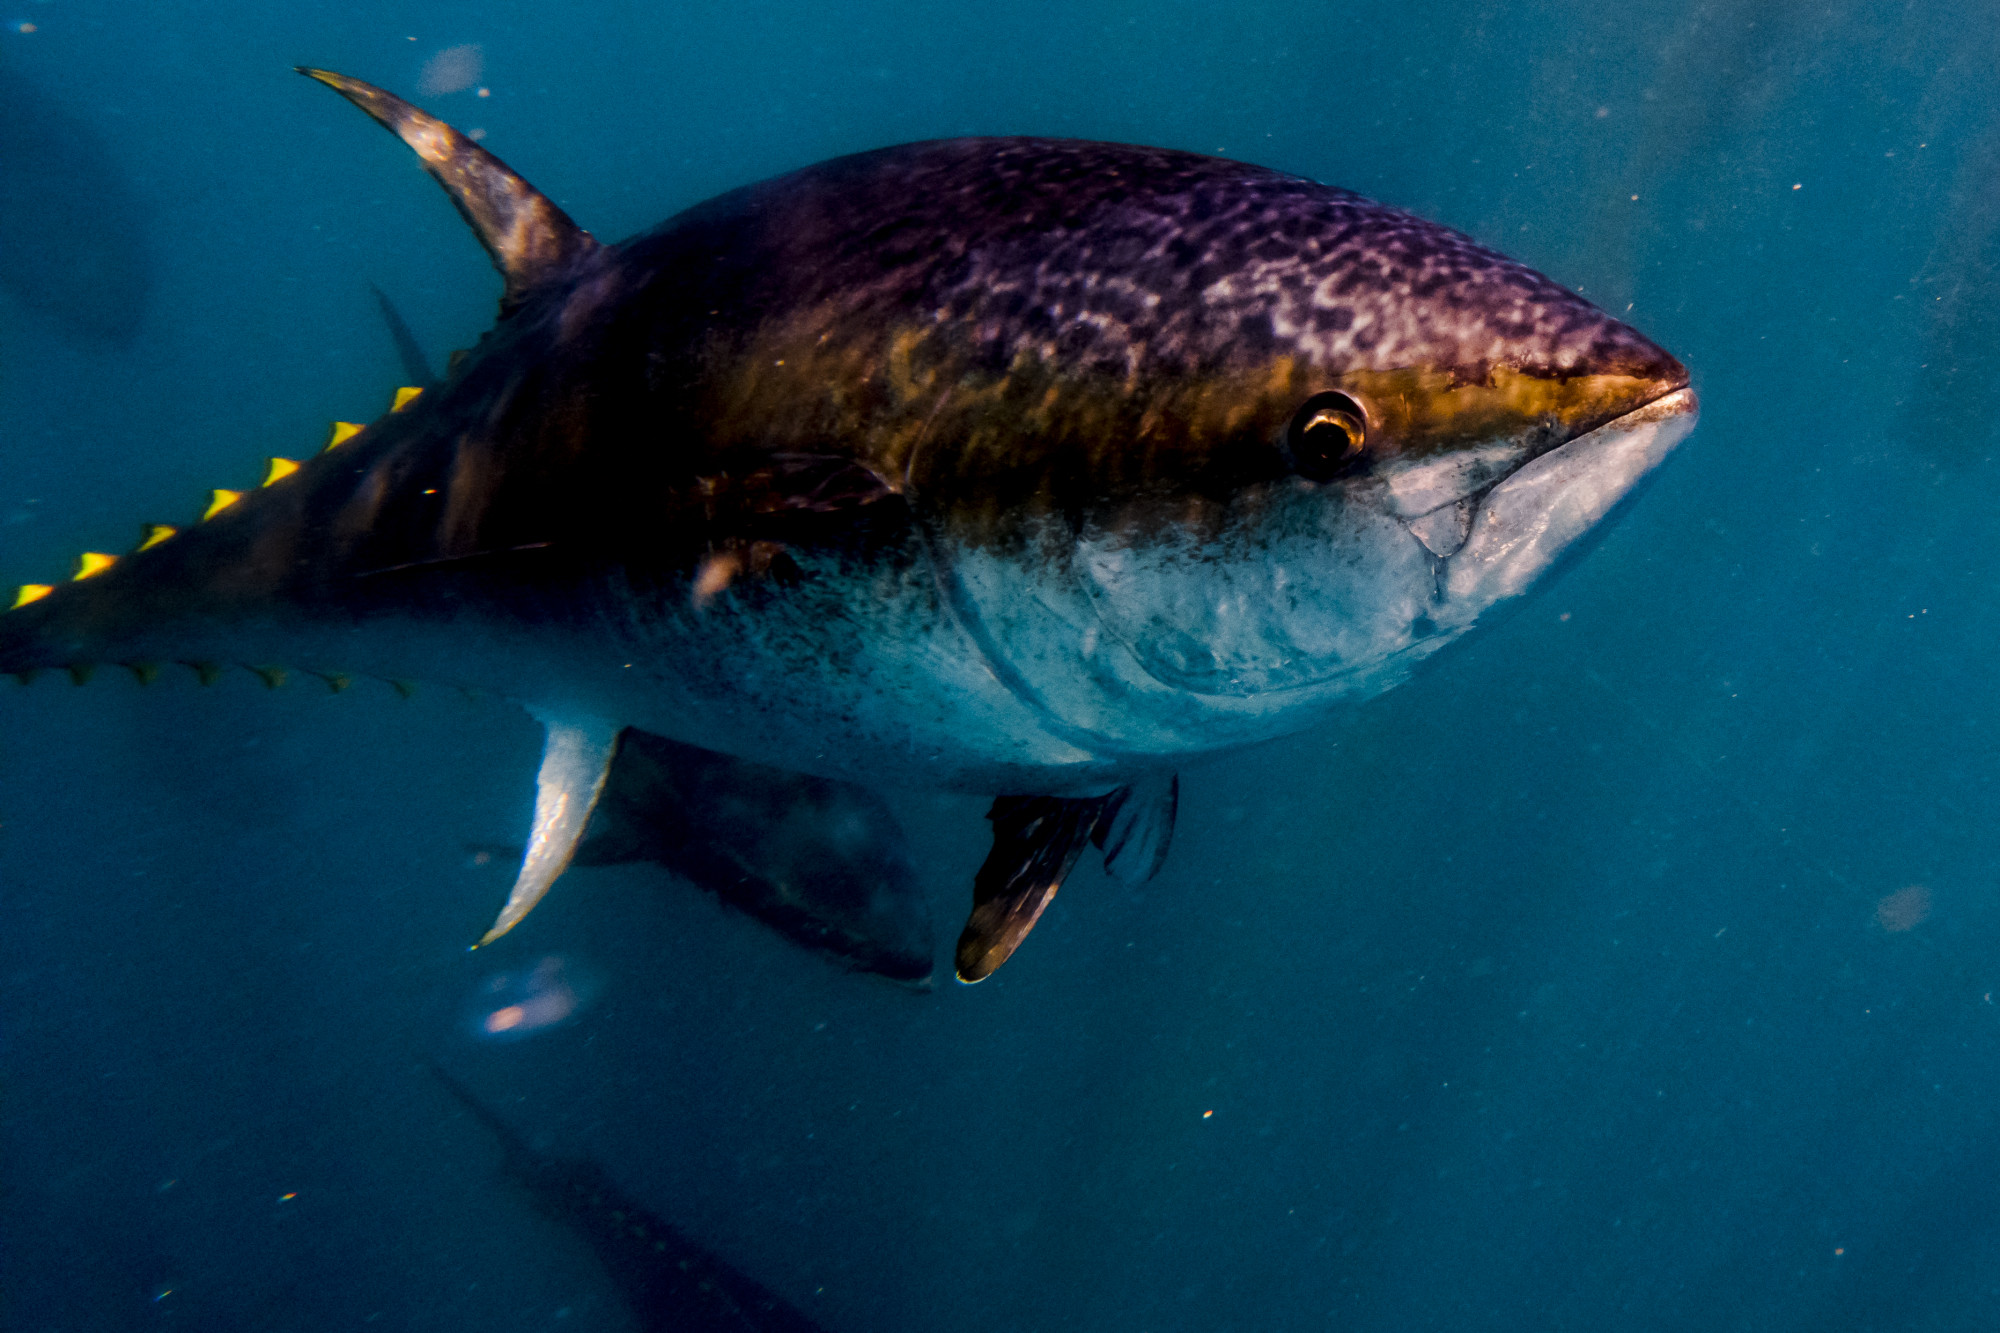 Kiderült, hogy mit keresett egy kékúszójú tonhal a birminghami autópályán